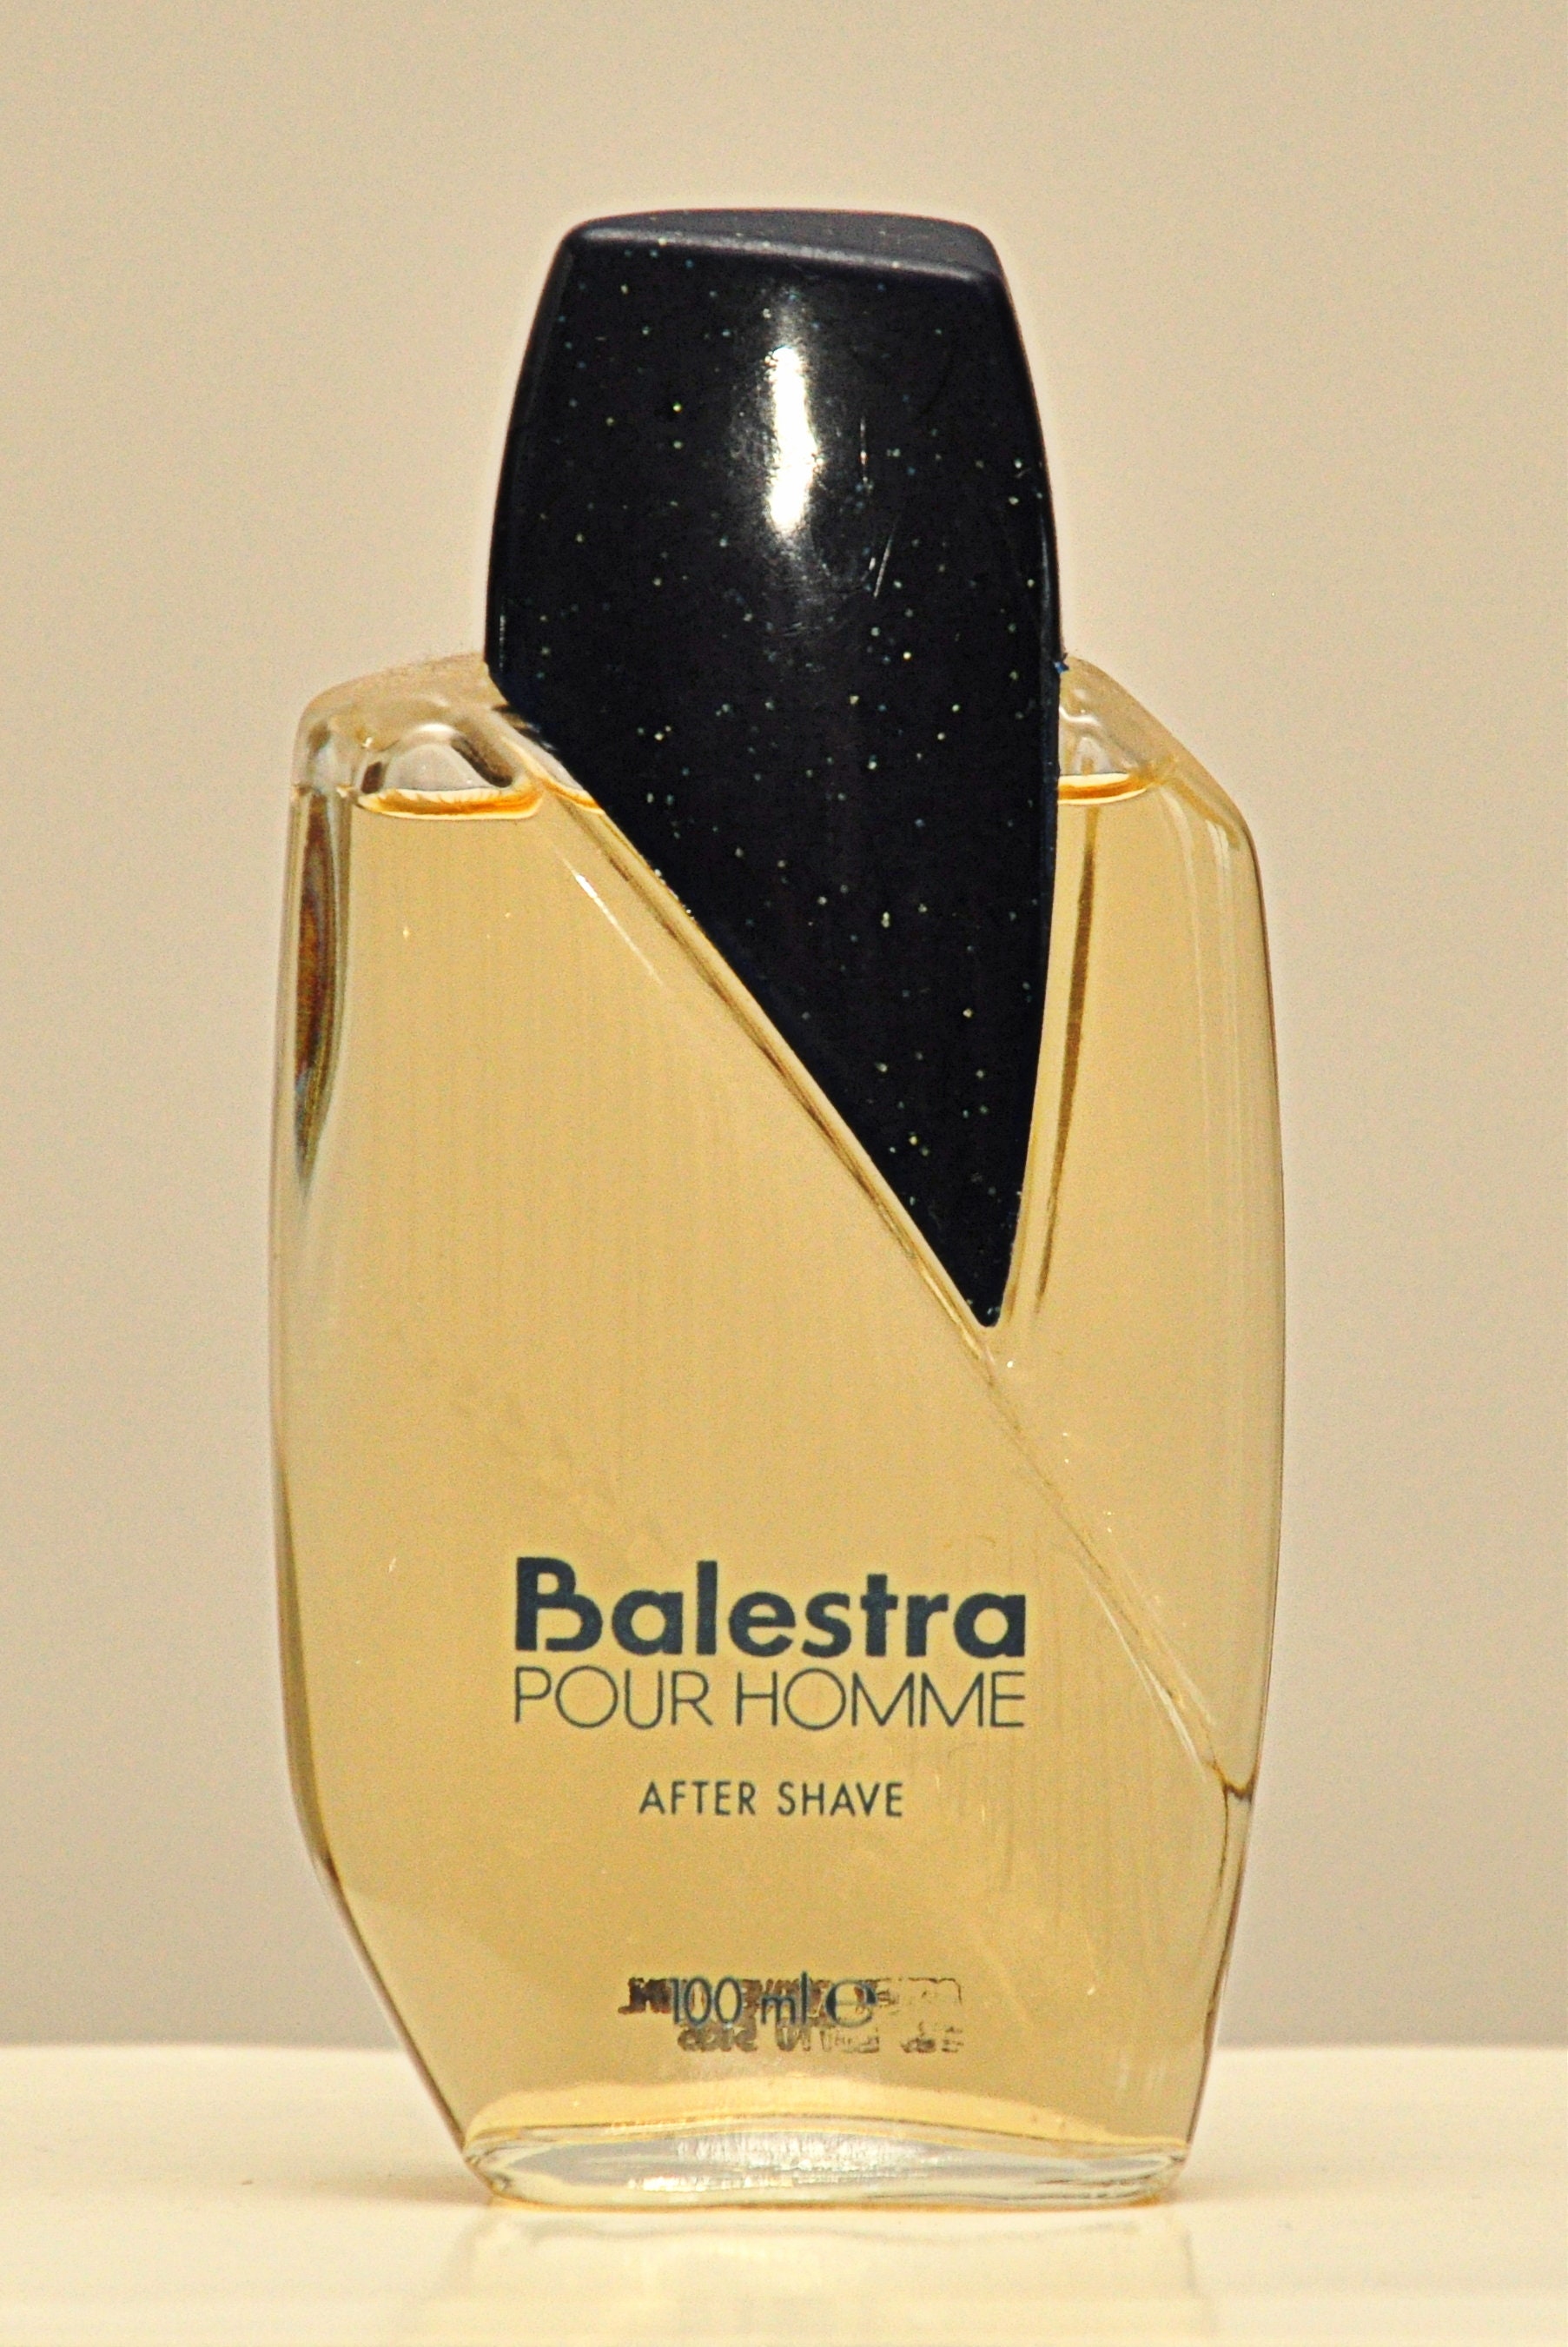 Armbrust Pour Homme Von Renato Balestra After Shave 100Ml Splash Non Spray Perfume Man Rare Vintage 1991 von YourVintagePerfume